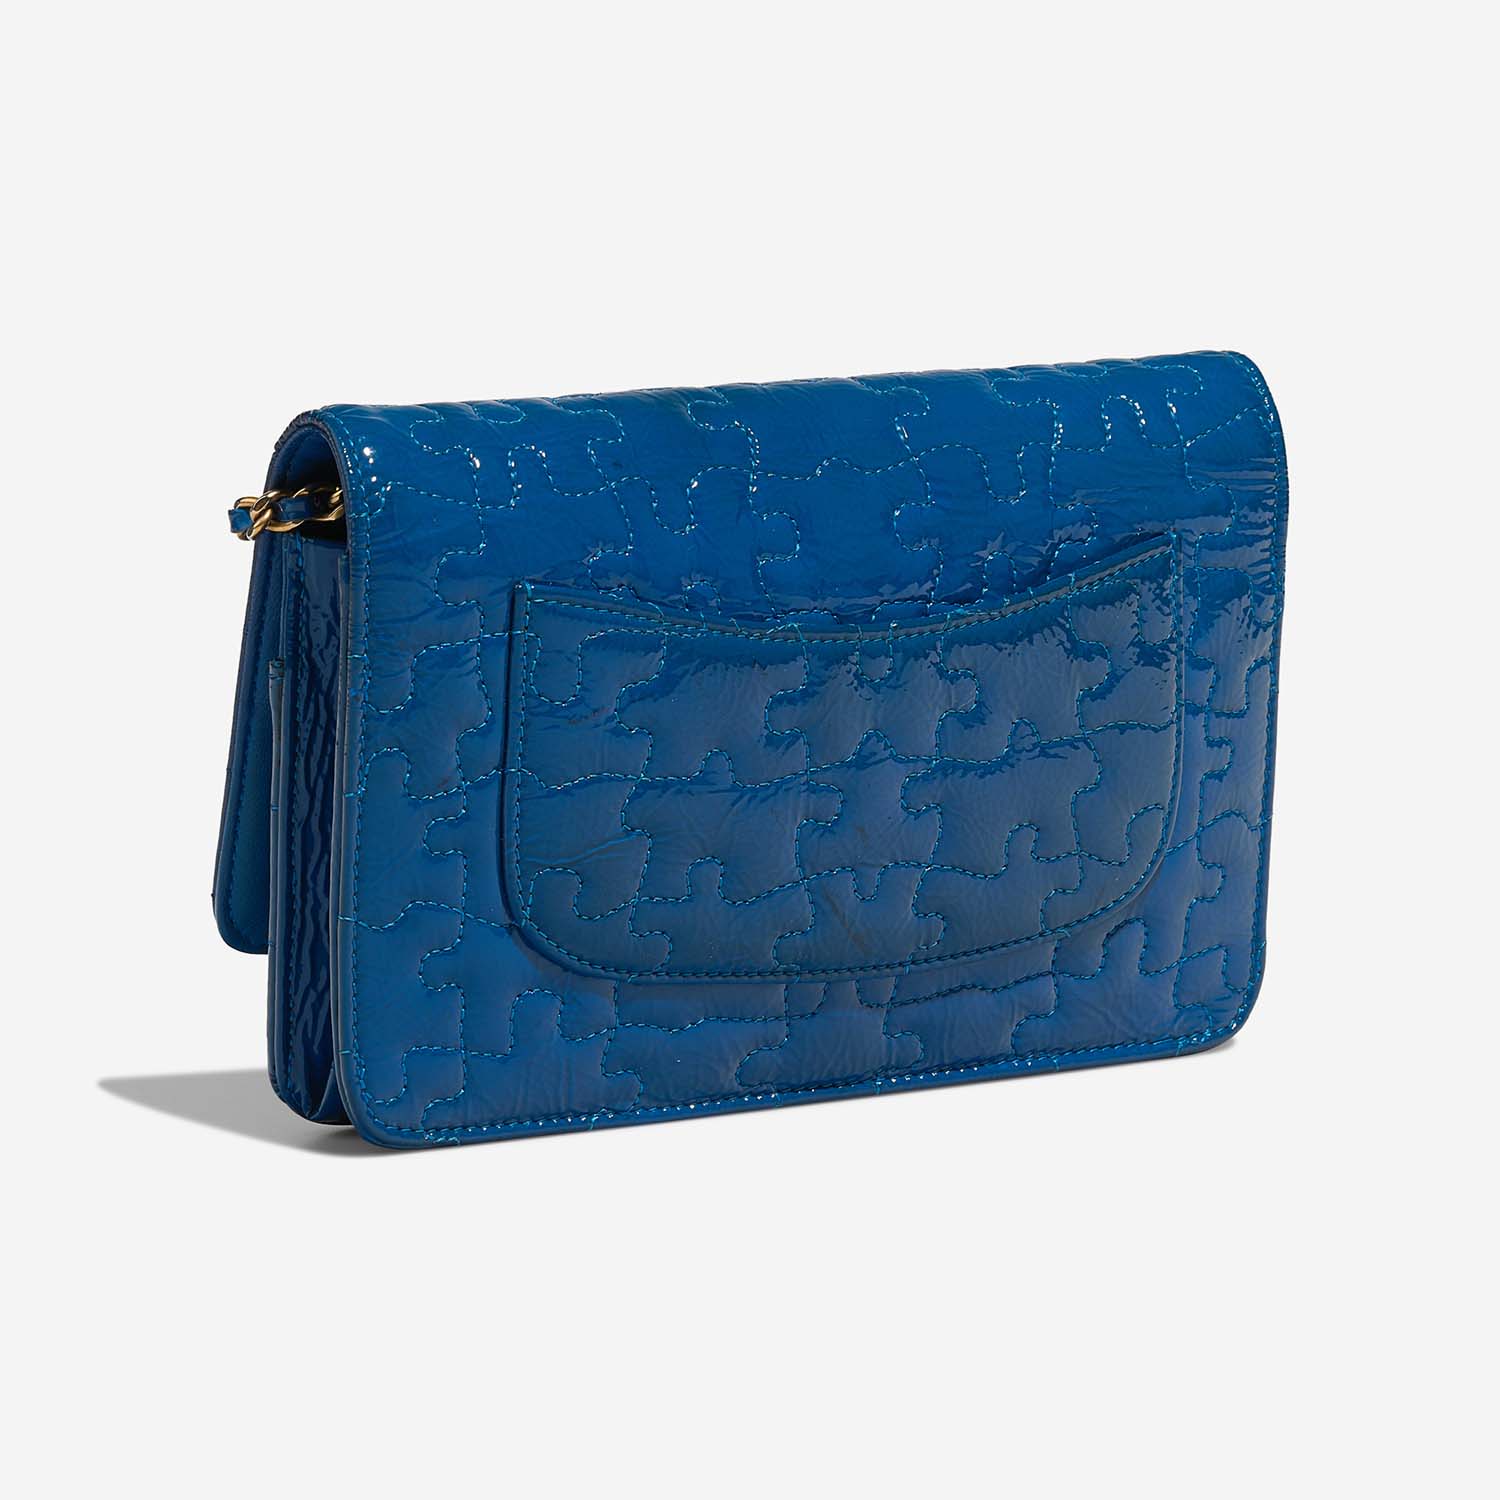 Chanel 255 WOC Blue Side Back | Verkaufen Sie Ihre Designer-Tasche auf Saclab.com